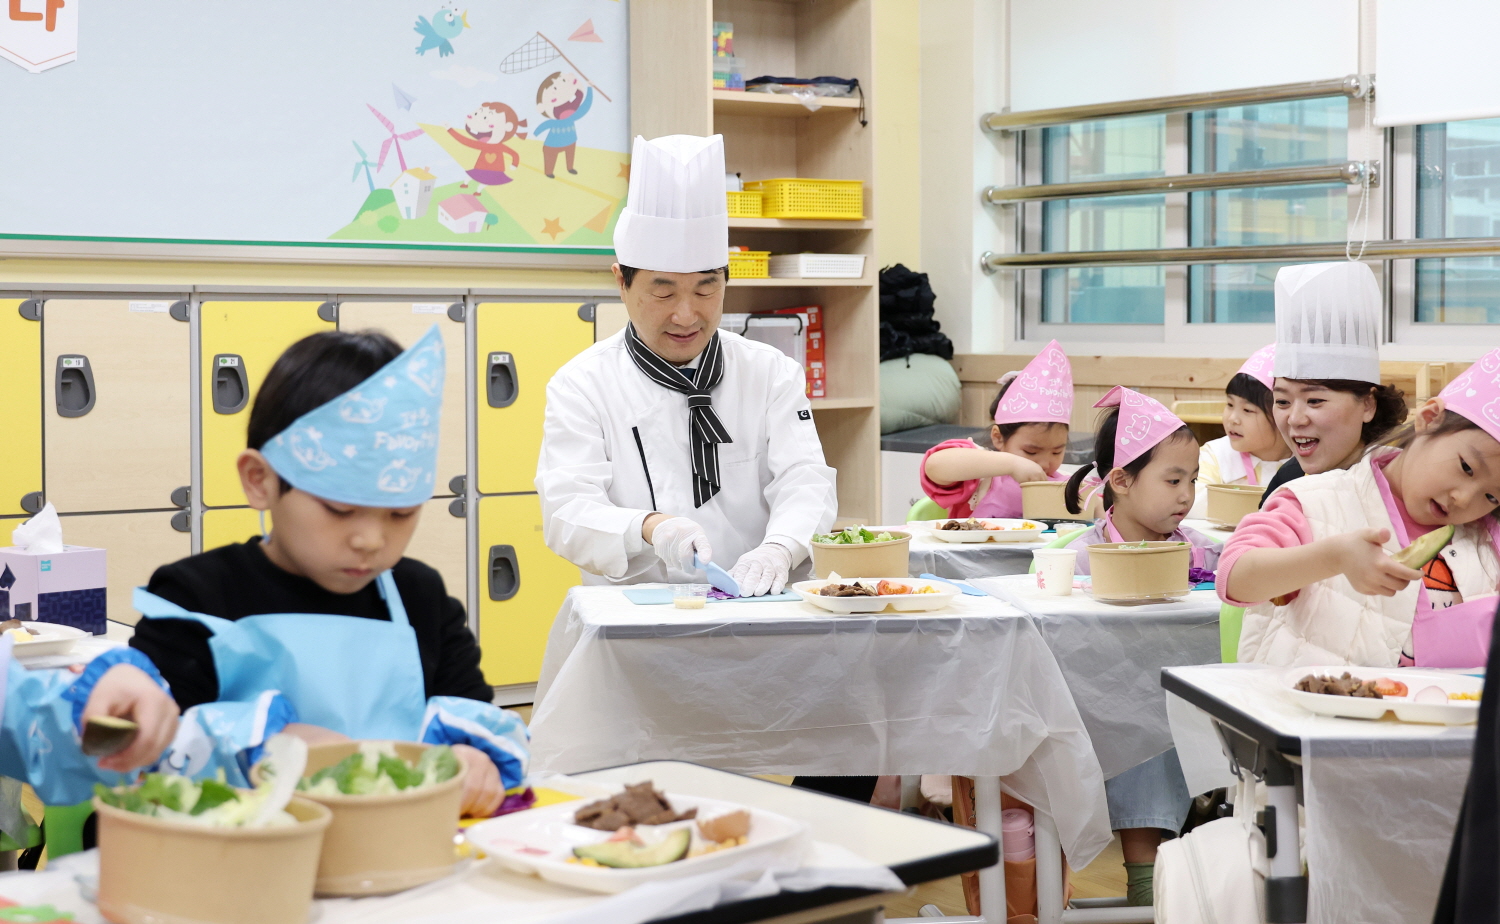 이주호 부총리 겸 교육부장관은 3월 12일(화) 충북 진천 상신초등학교에서 늘봄학교의 성공적 안착을 주제로 제16차 함께차담회를 개최했다.